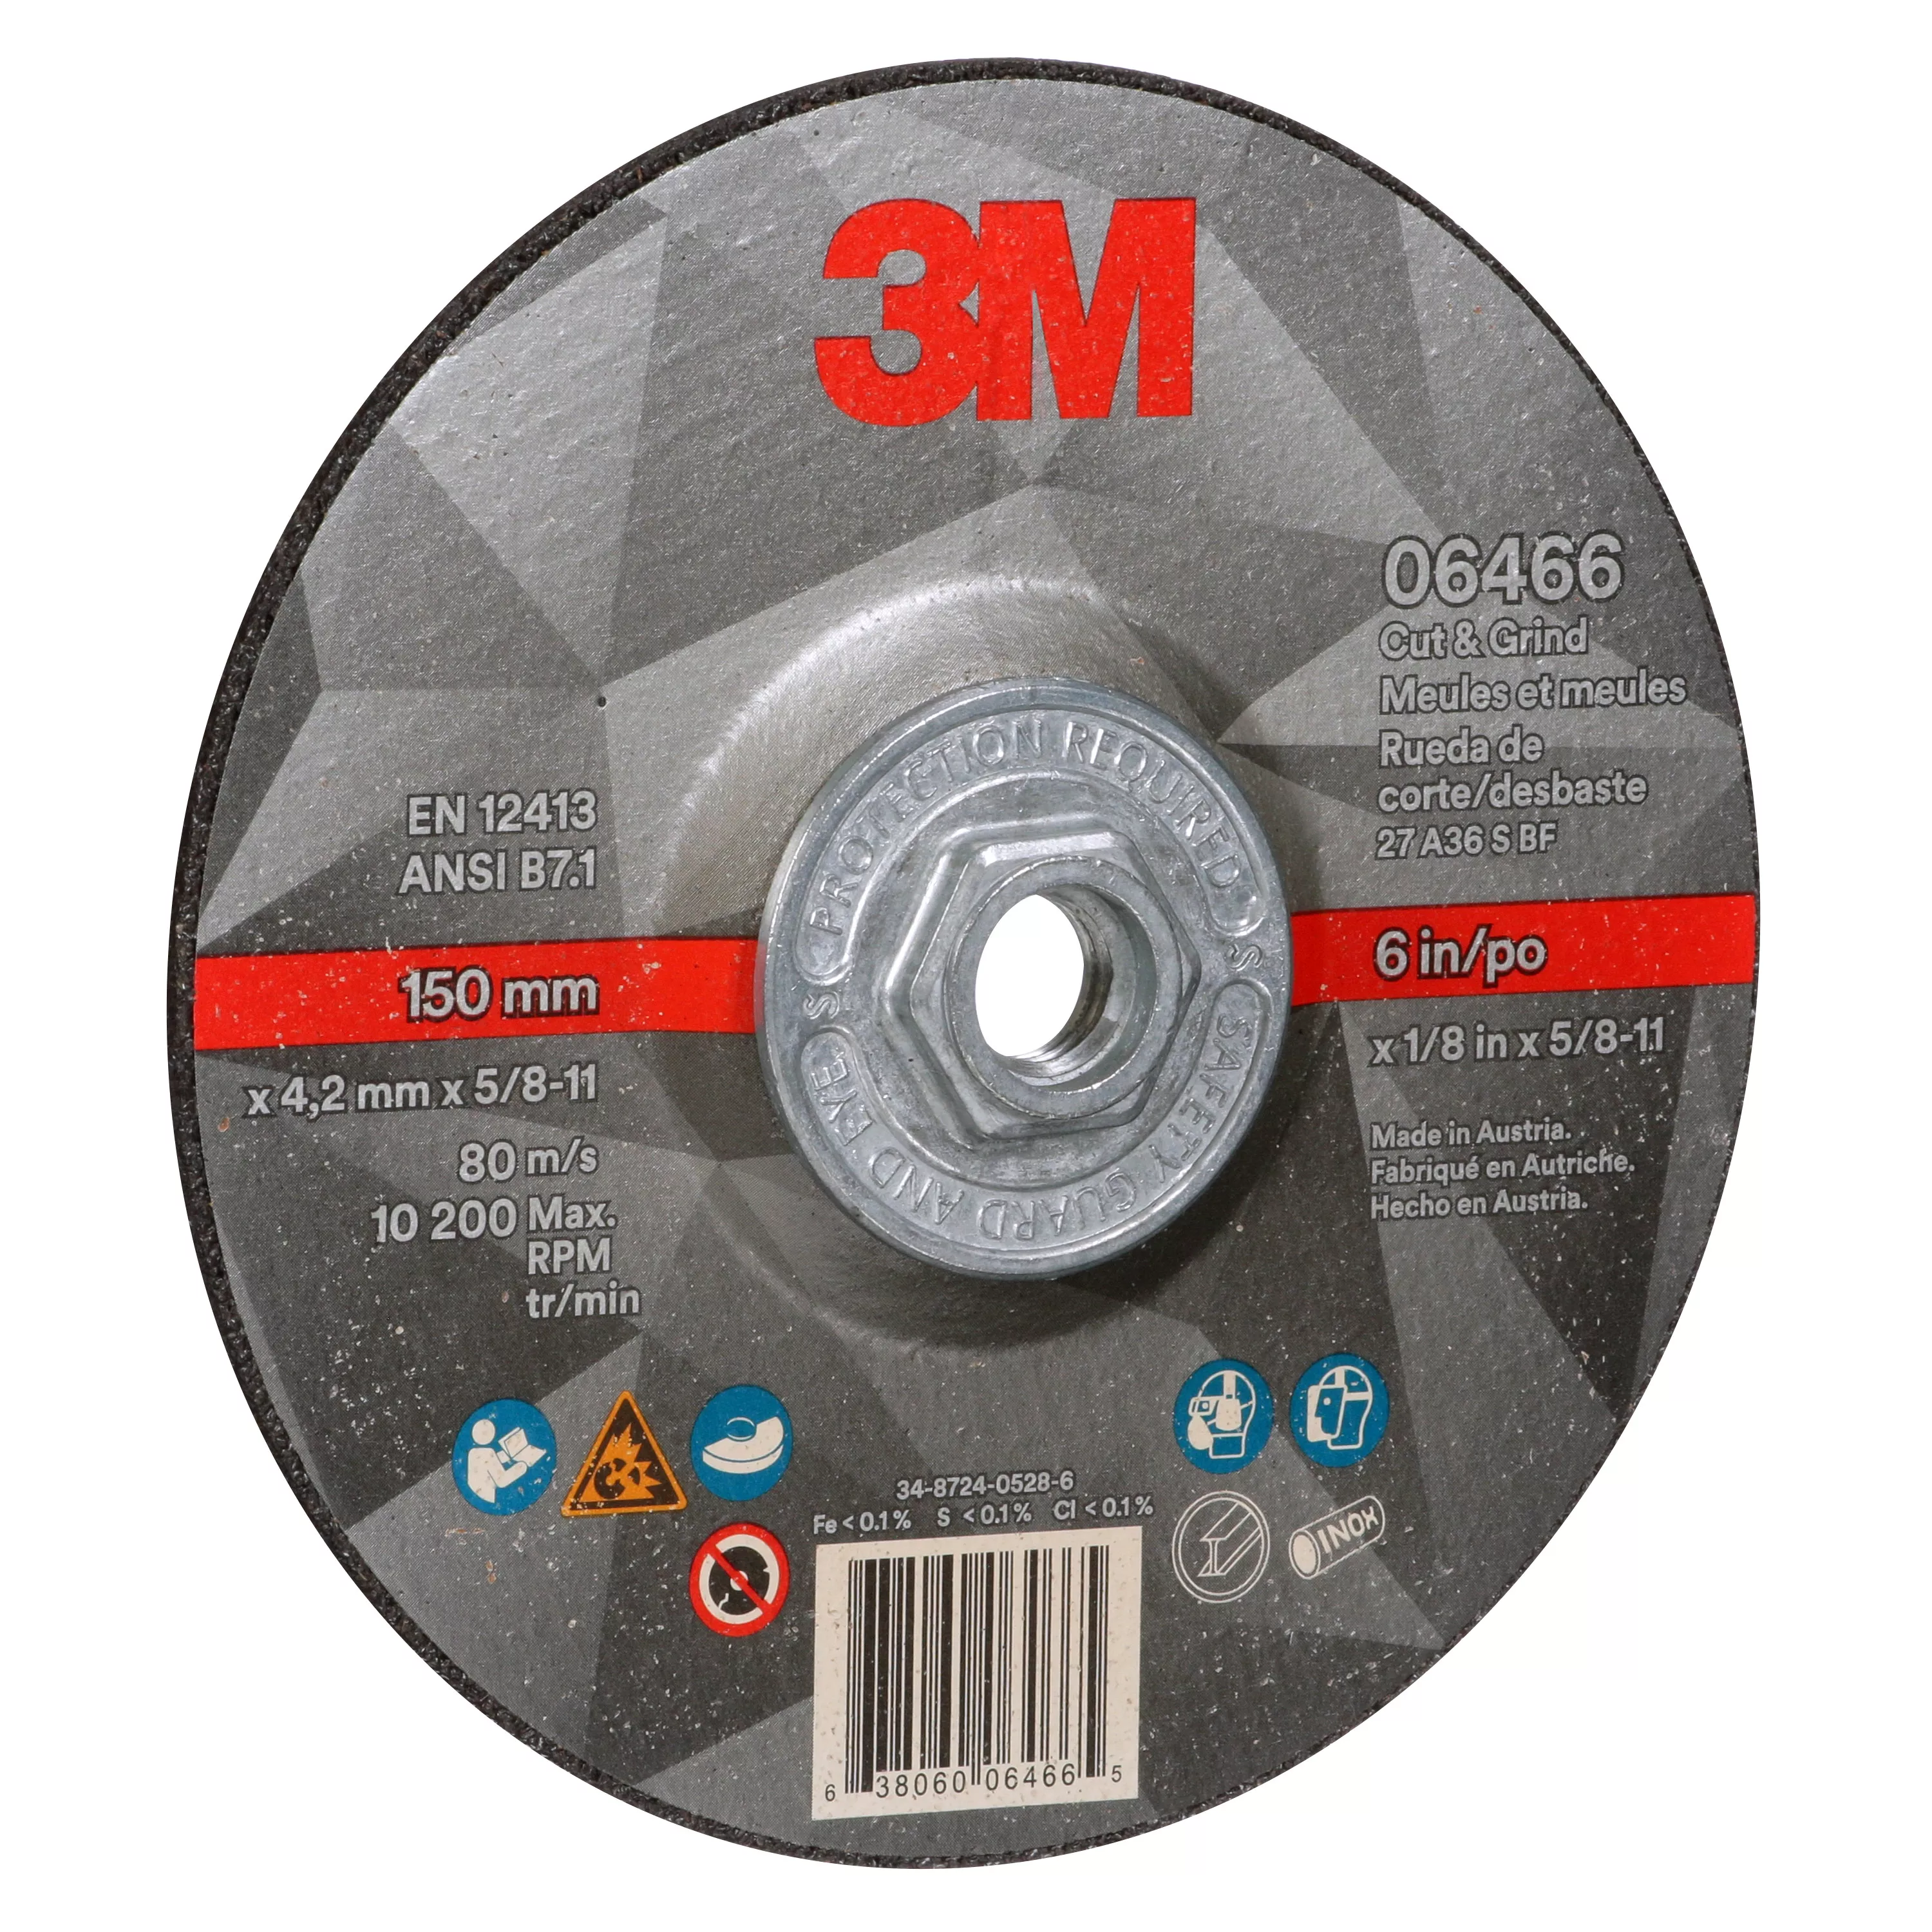 SKU 7100245021 | 3M™ Cut & Grind Wheel